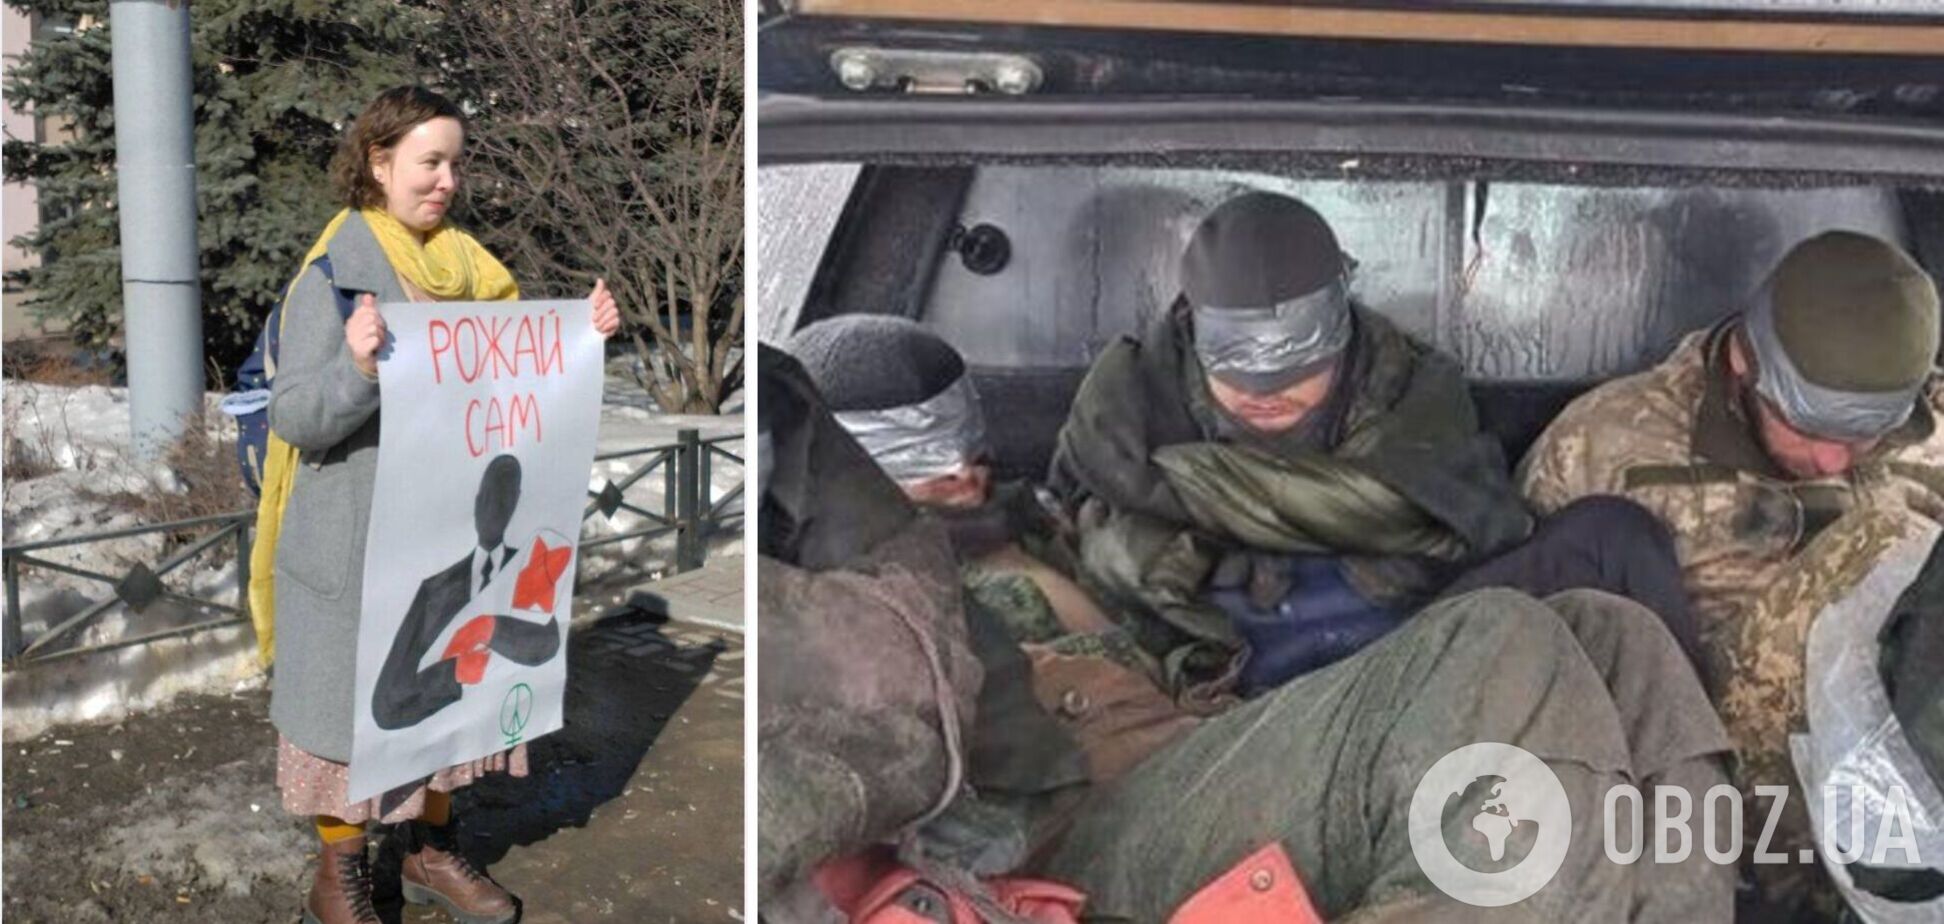 'Рожай сам': в России девушка устроила одиночный пикет против войны с Украиной. Фото